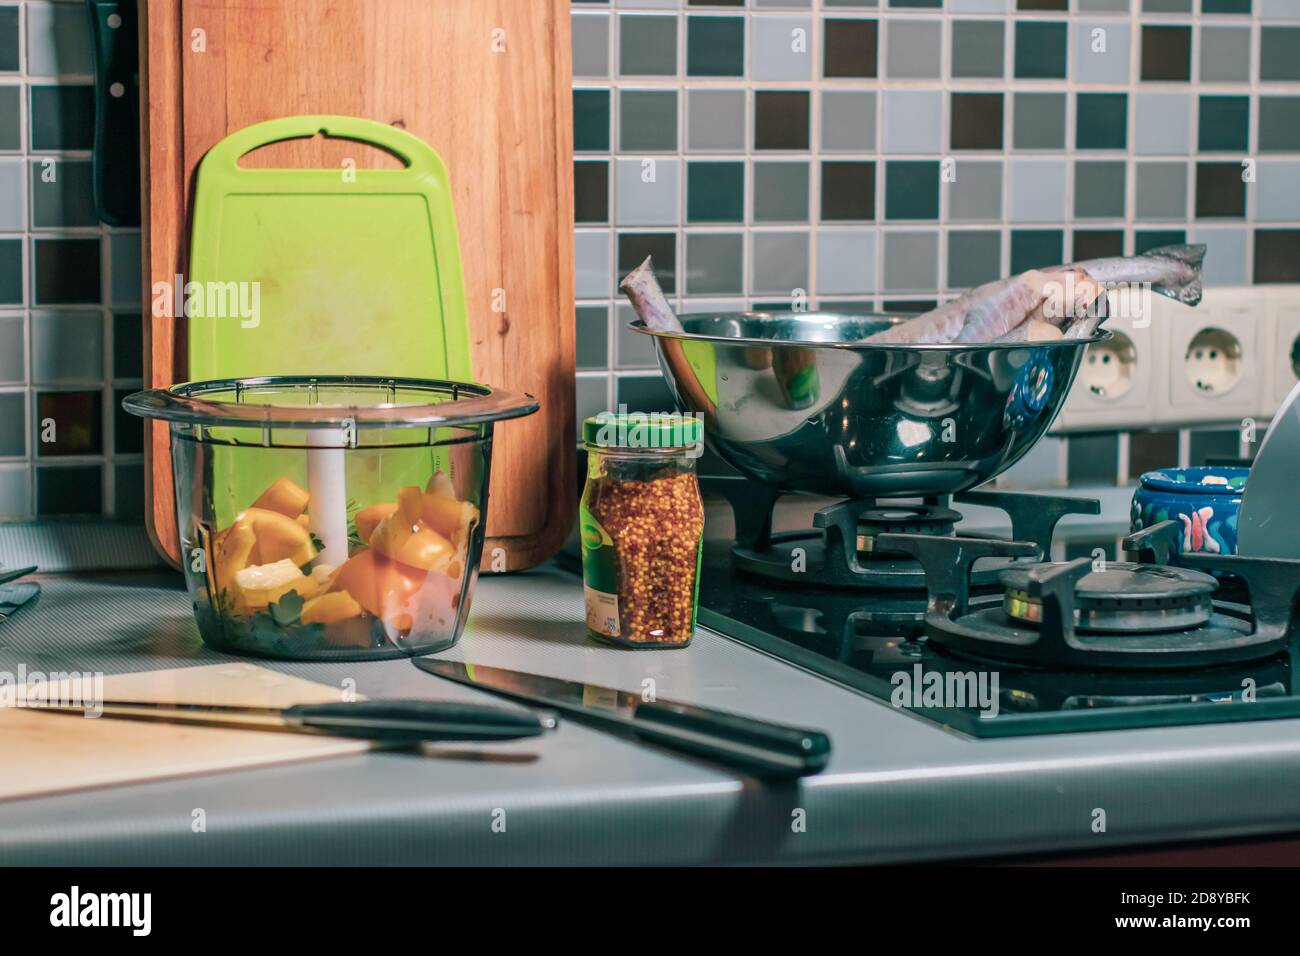 Bottiglia di senape, frullatore e taglieri in cucina casalinga. Atmosfera accogliente Foto Stock